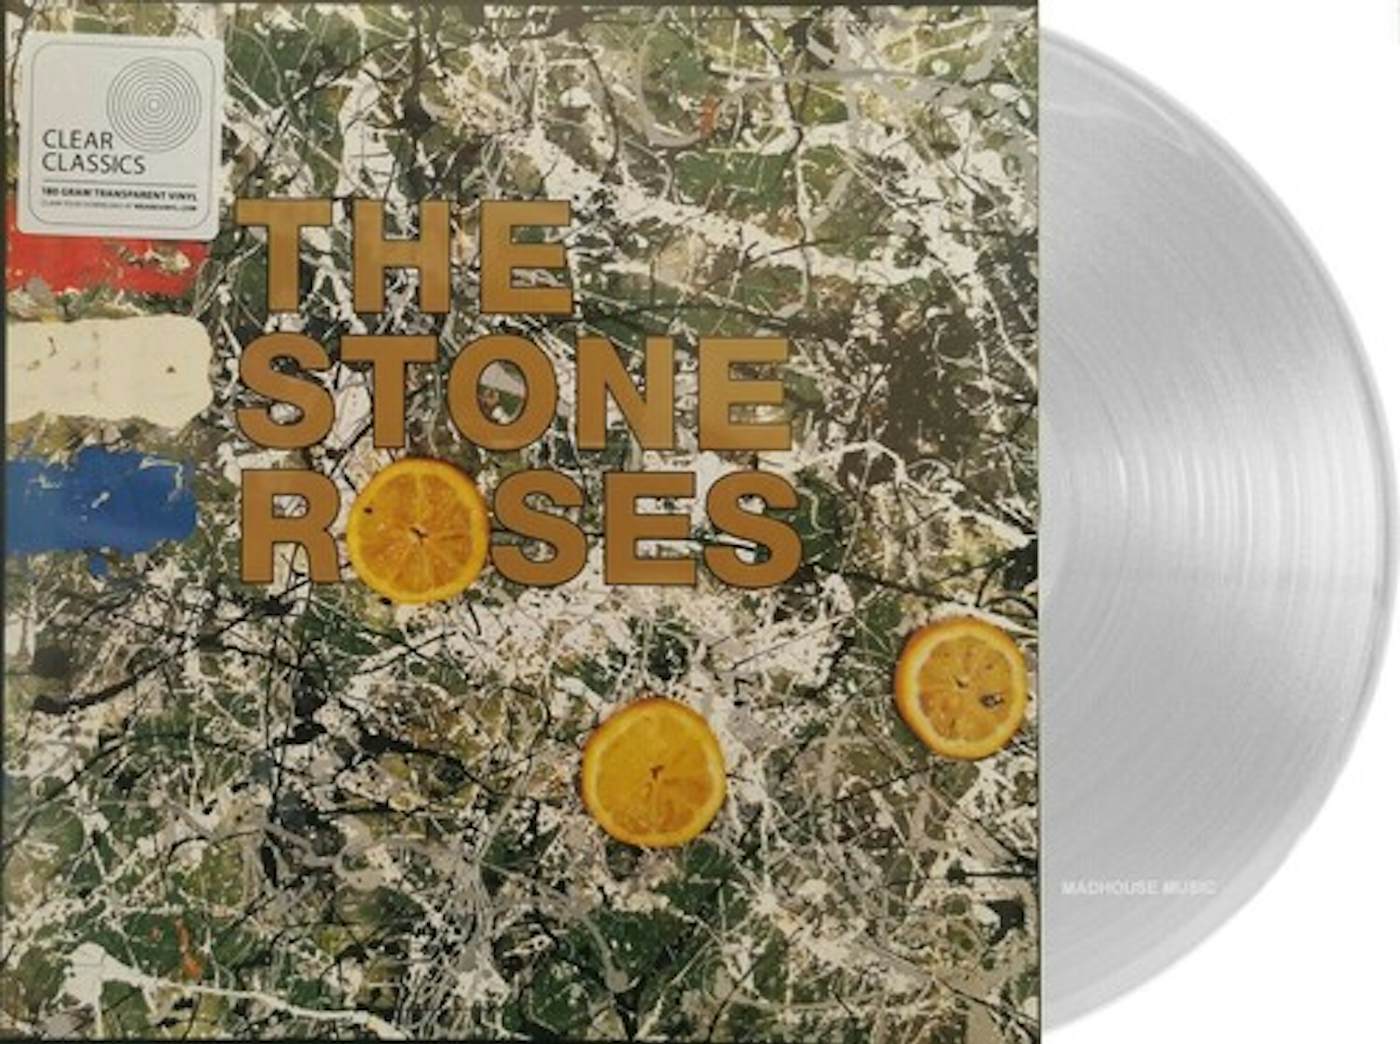 The Stone Record